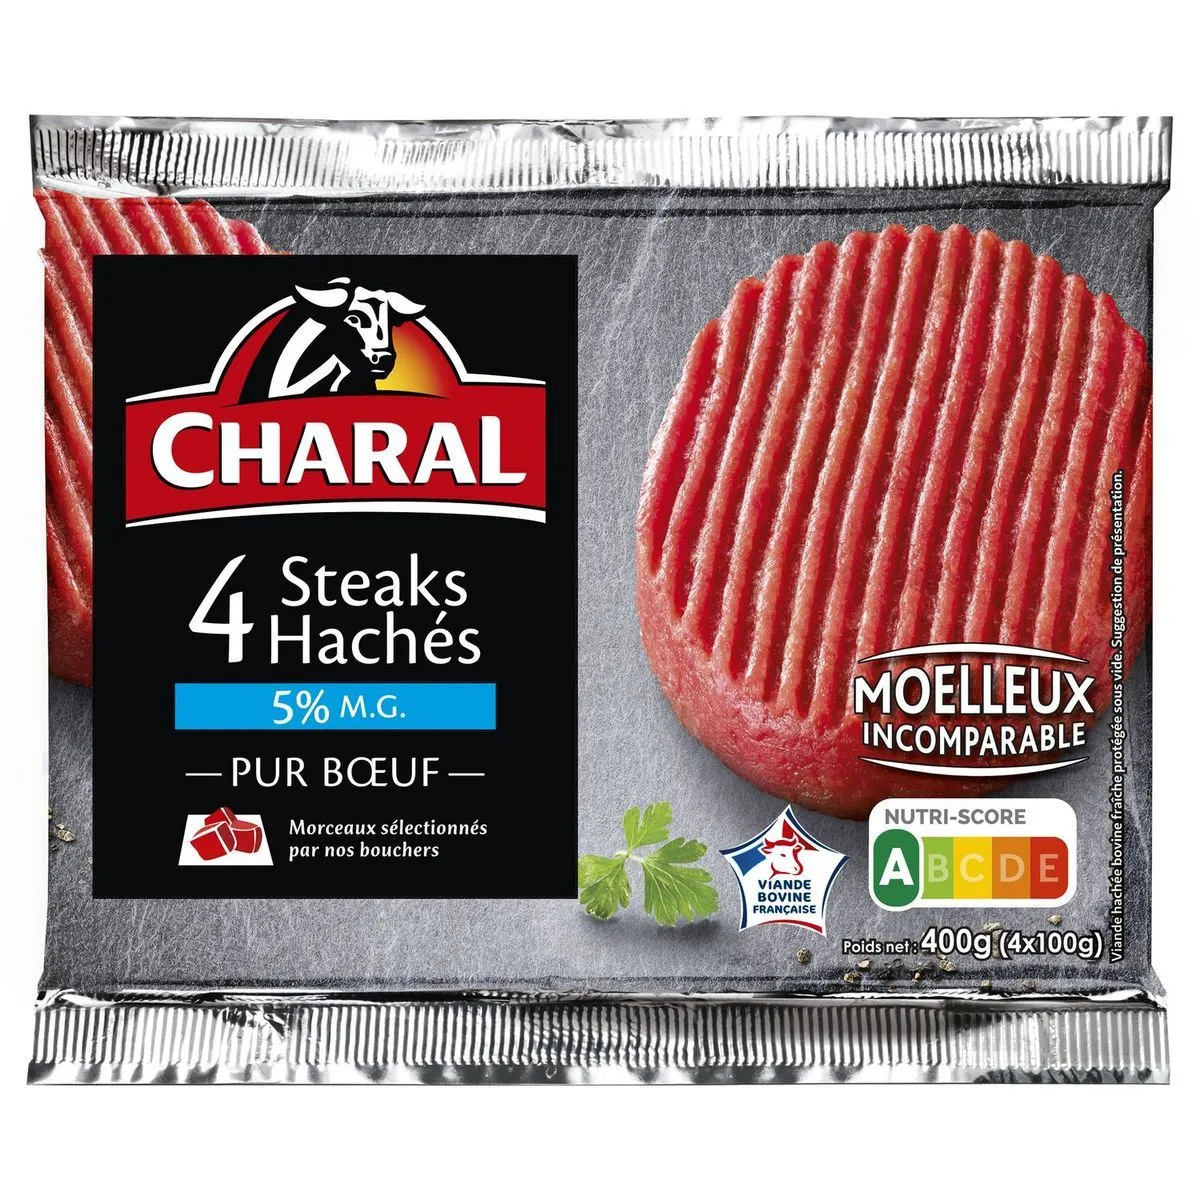 steaks hachés pur bœuf charal